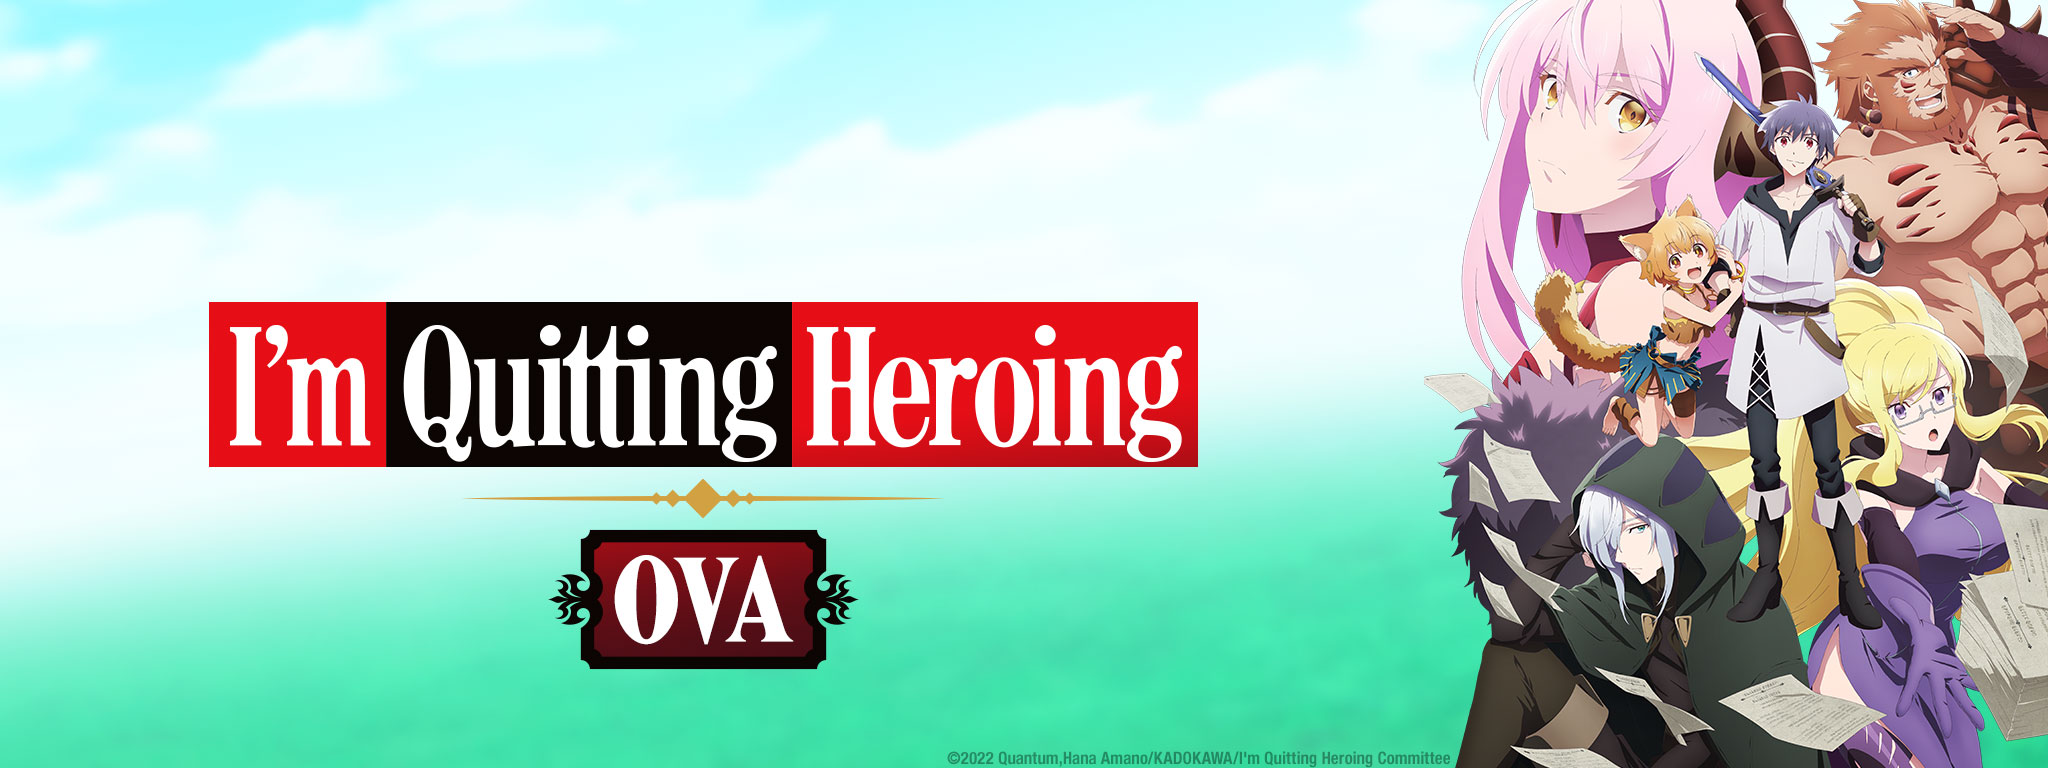 Key Art for I'm Quitting Heroing OVA